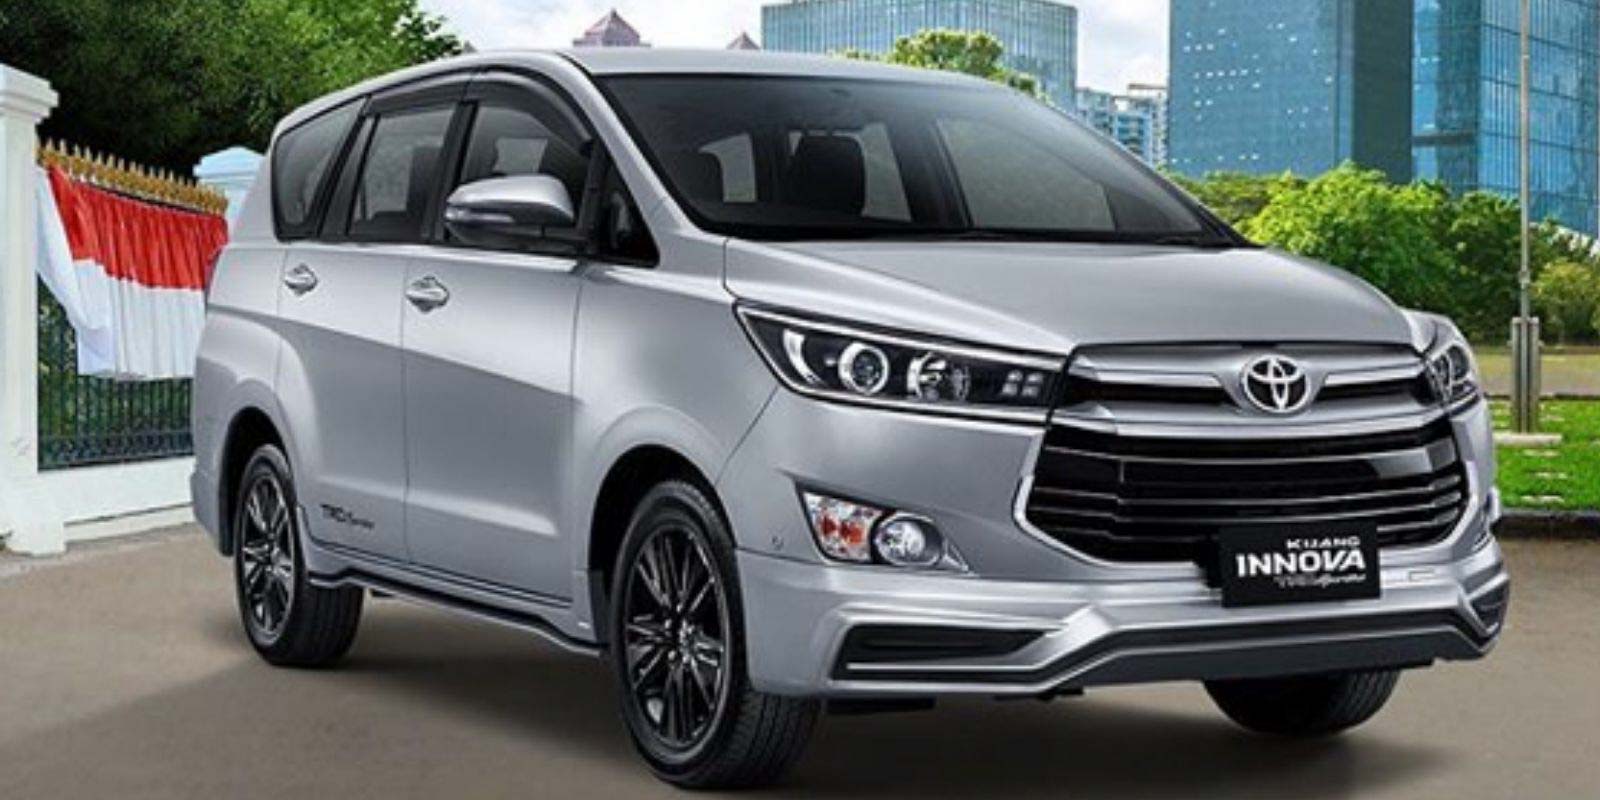 Peluncuran Toyota Innova TRD Sportivo 2020 di Indonesia